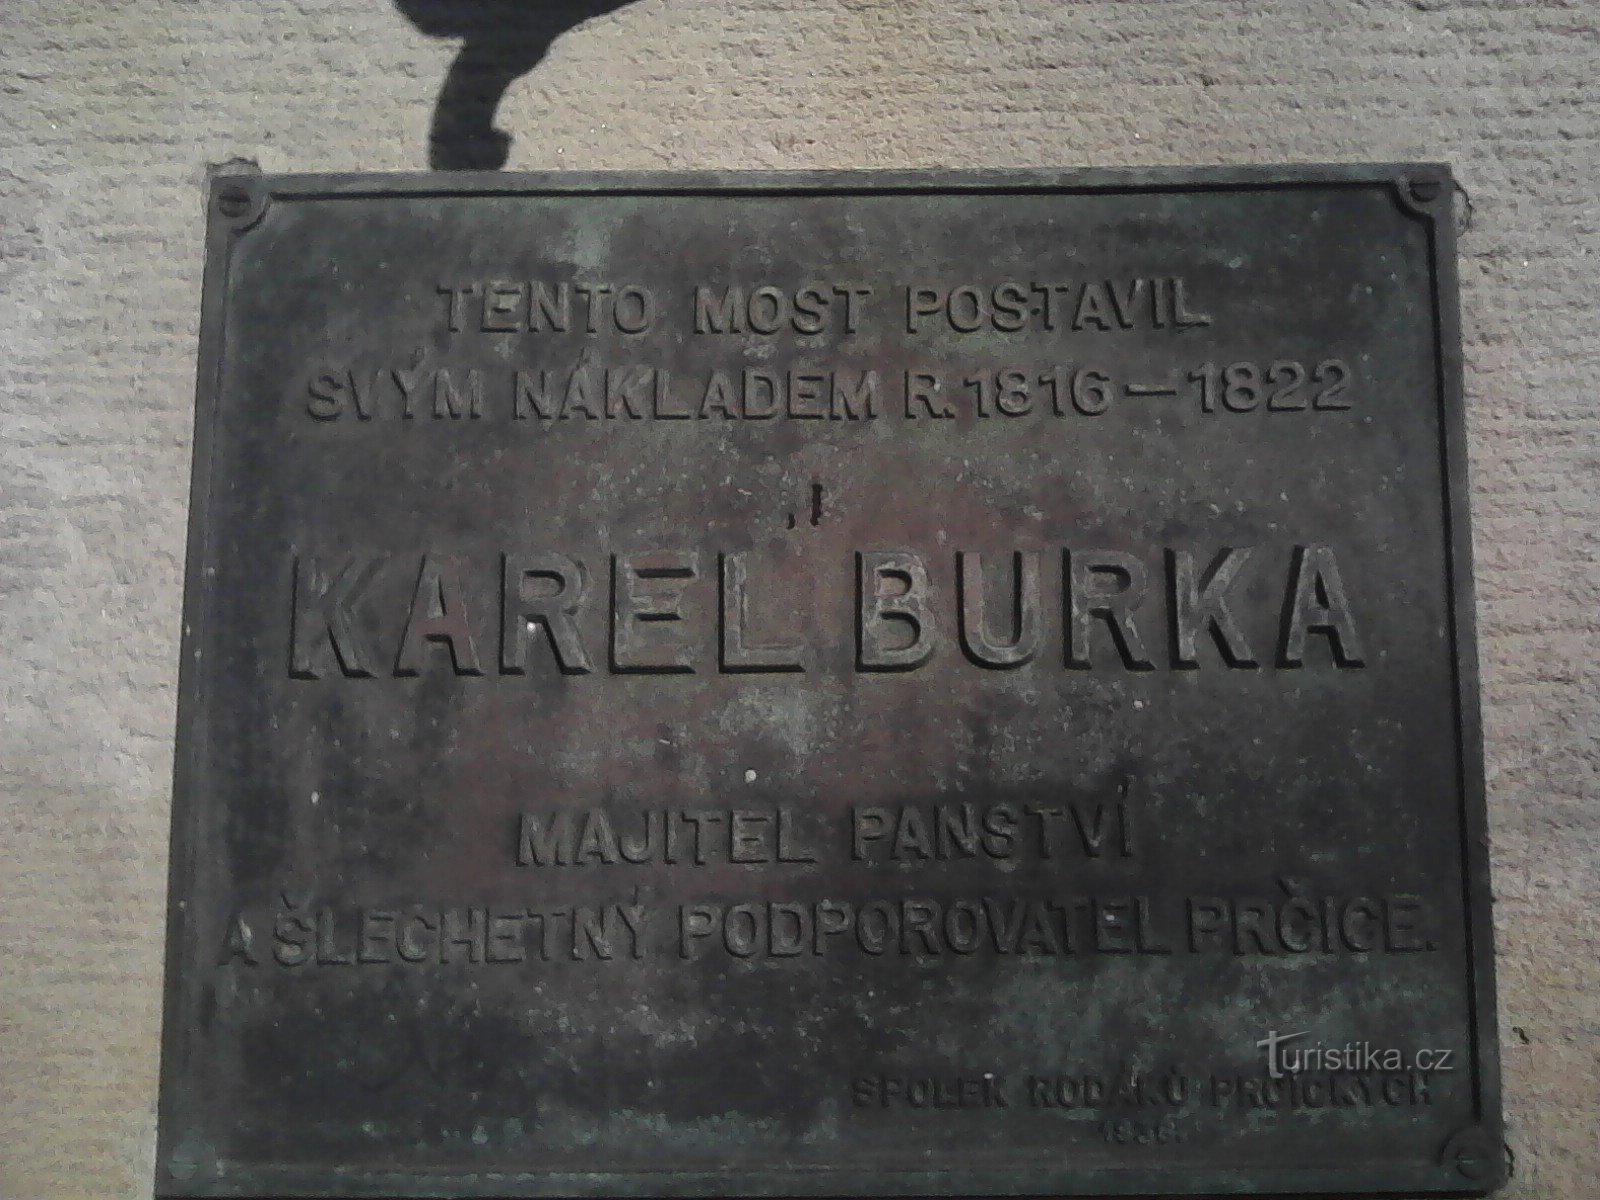 1. Tấm bảng tưởng niệm trên Cầu Prčice của Karel Burka.